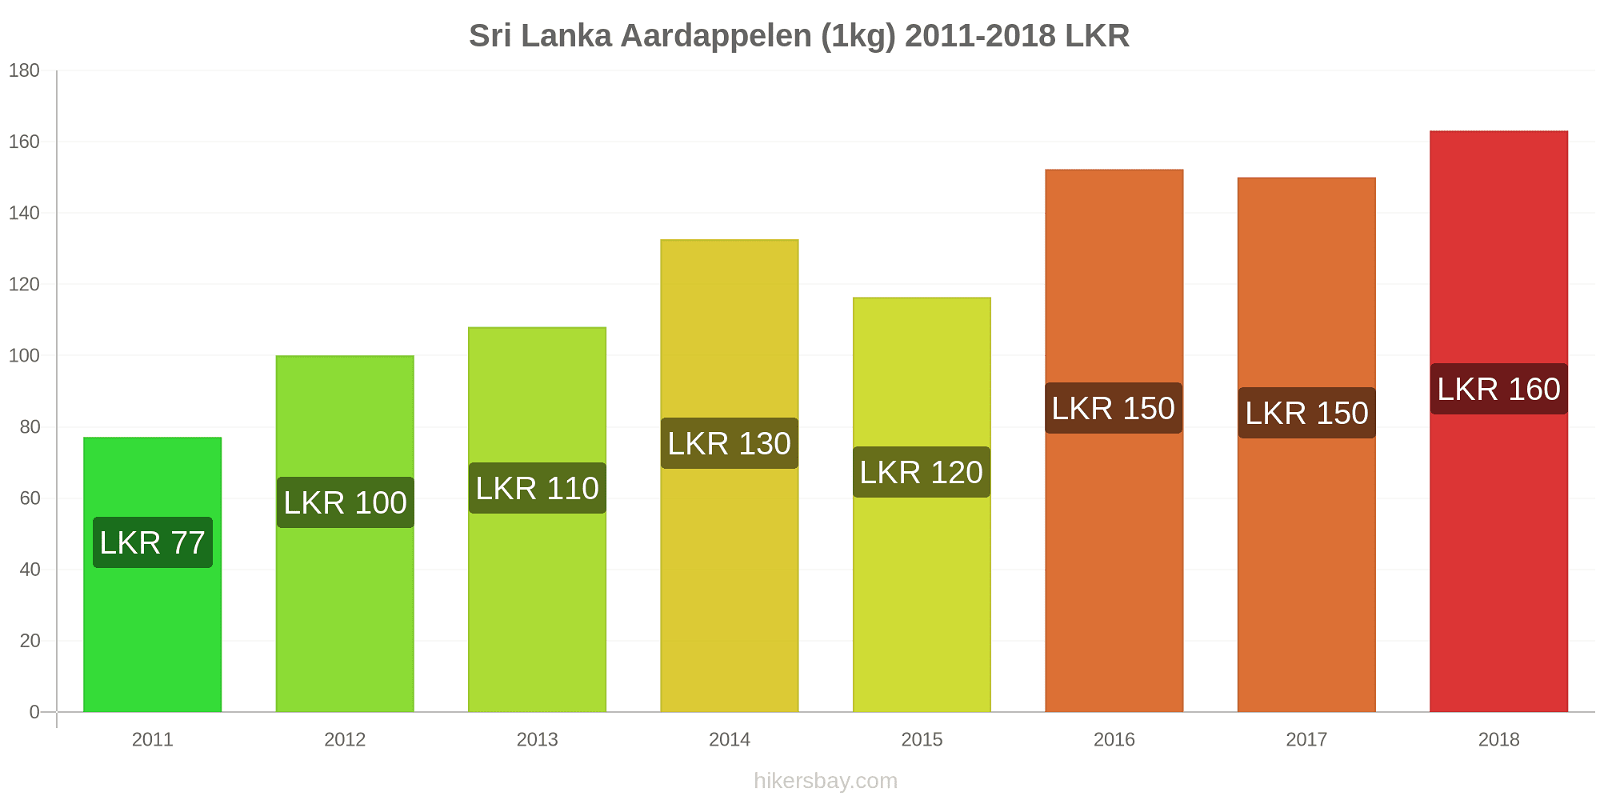 Sri Lanka prijswijzigingen Aardappelen (1kg) hikersbay.com